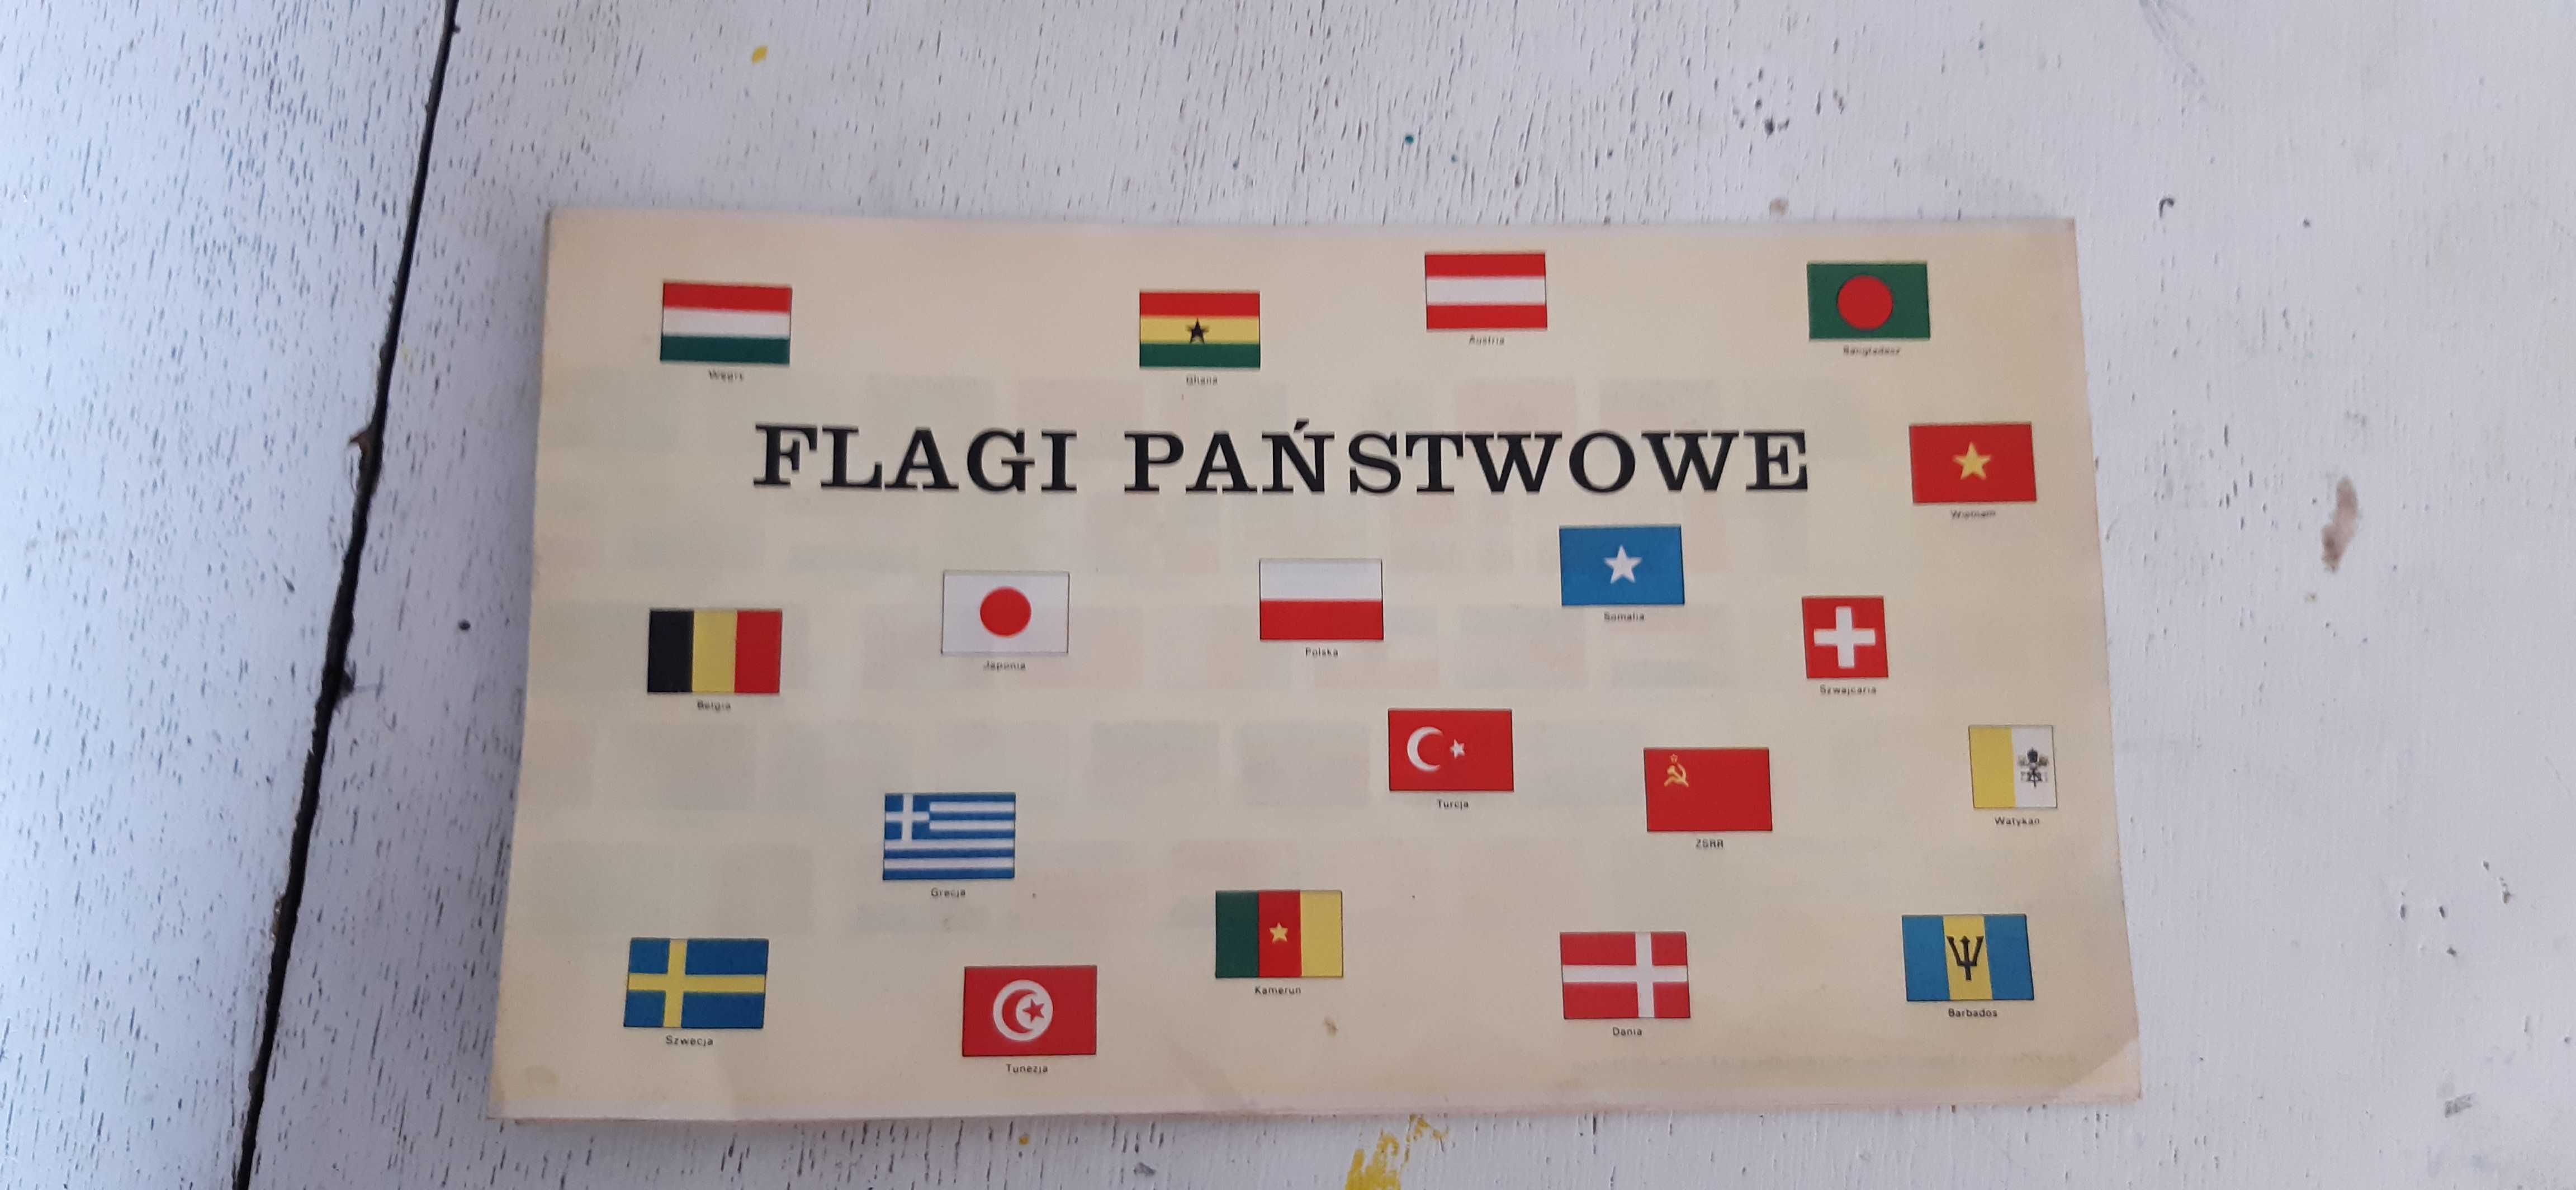 flagi państwowe, plan lekcji 1985rok, gratka dla kolekcjonerów prl